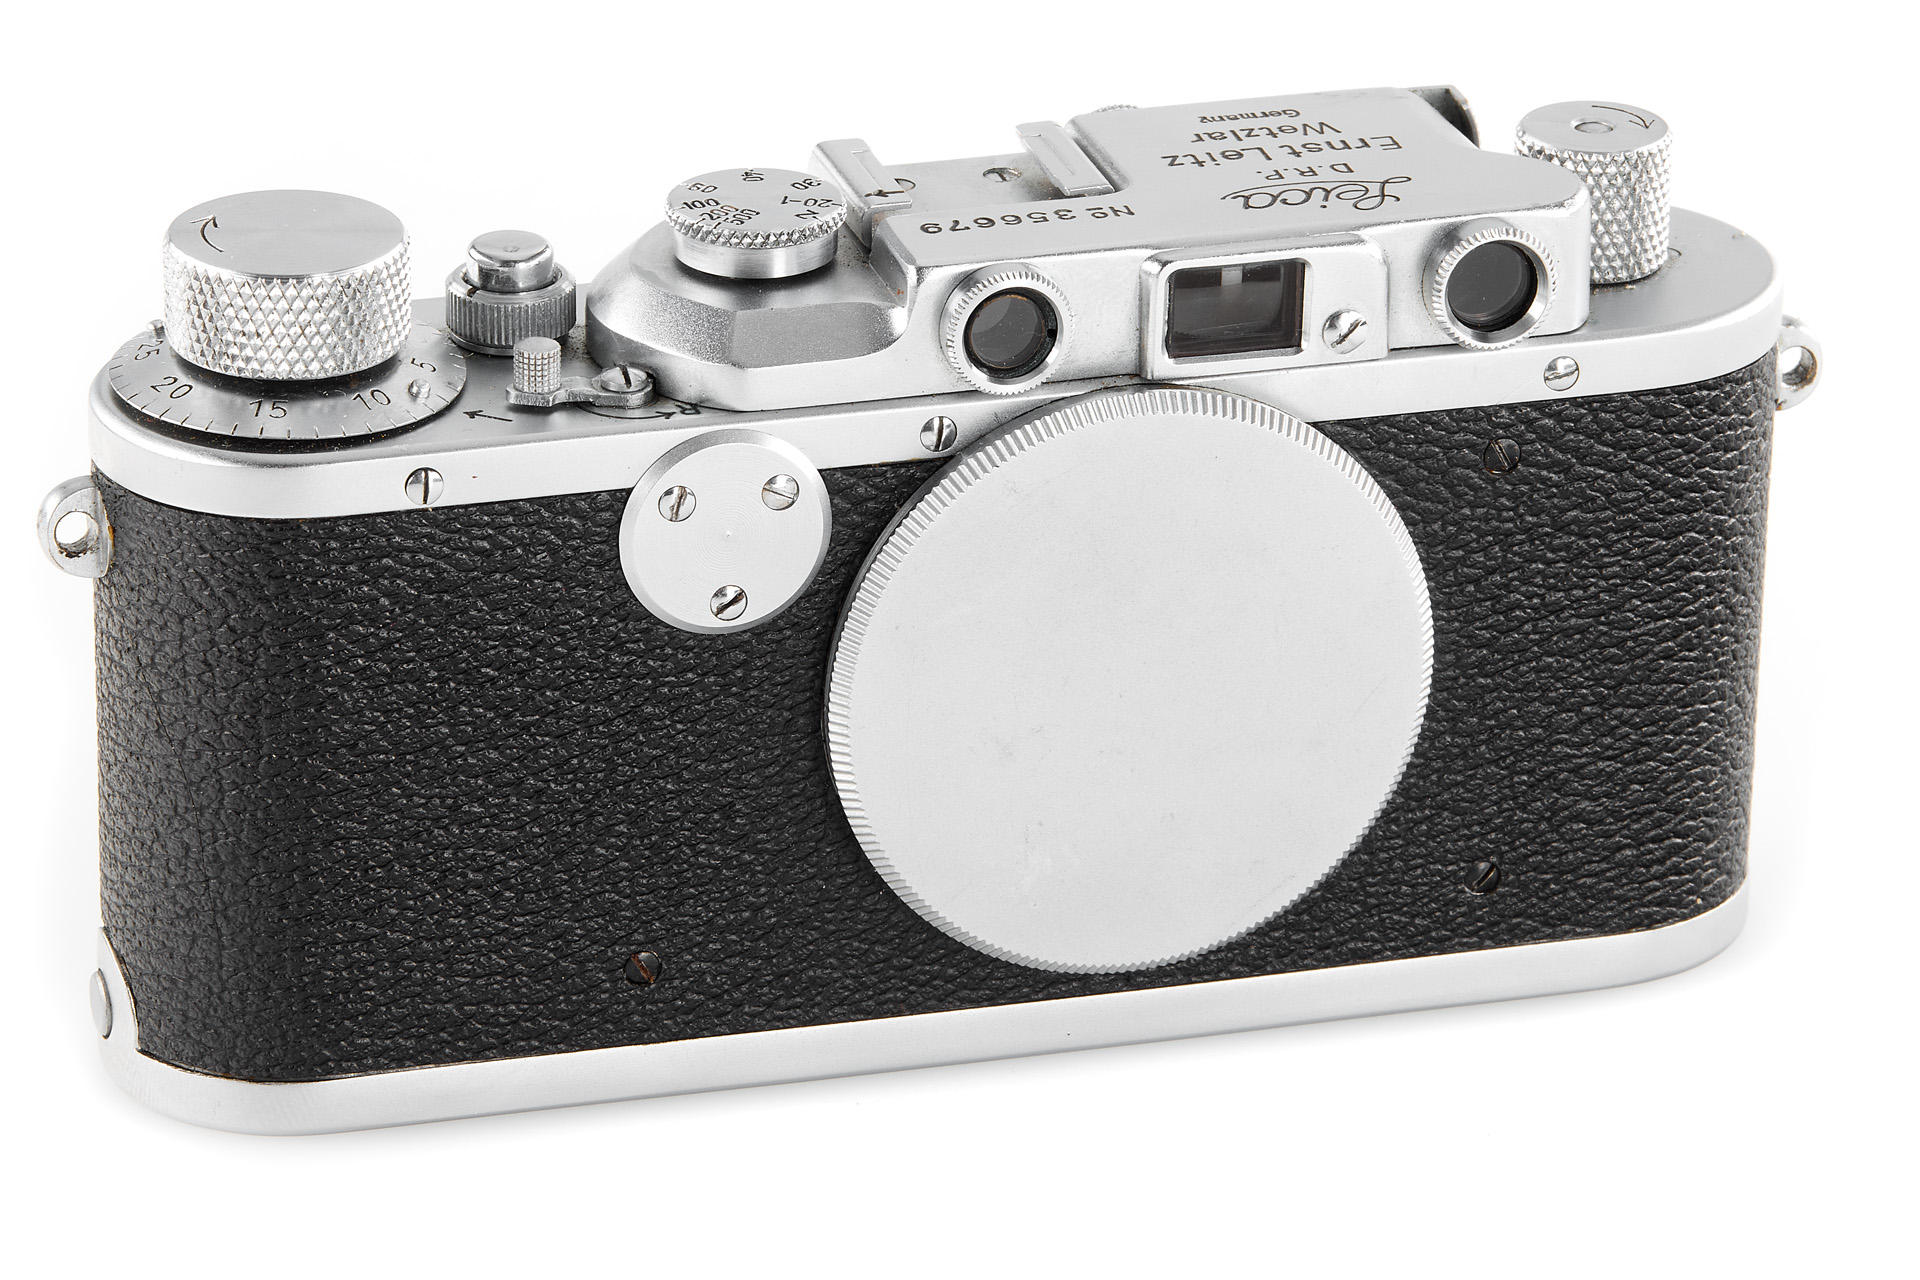 Leica II Mod. D chrome post-war